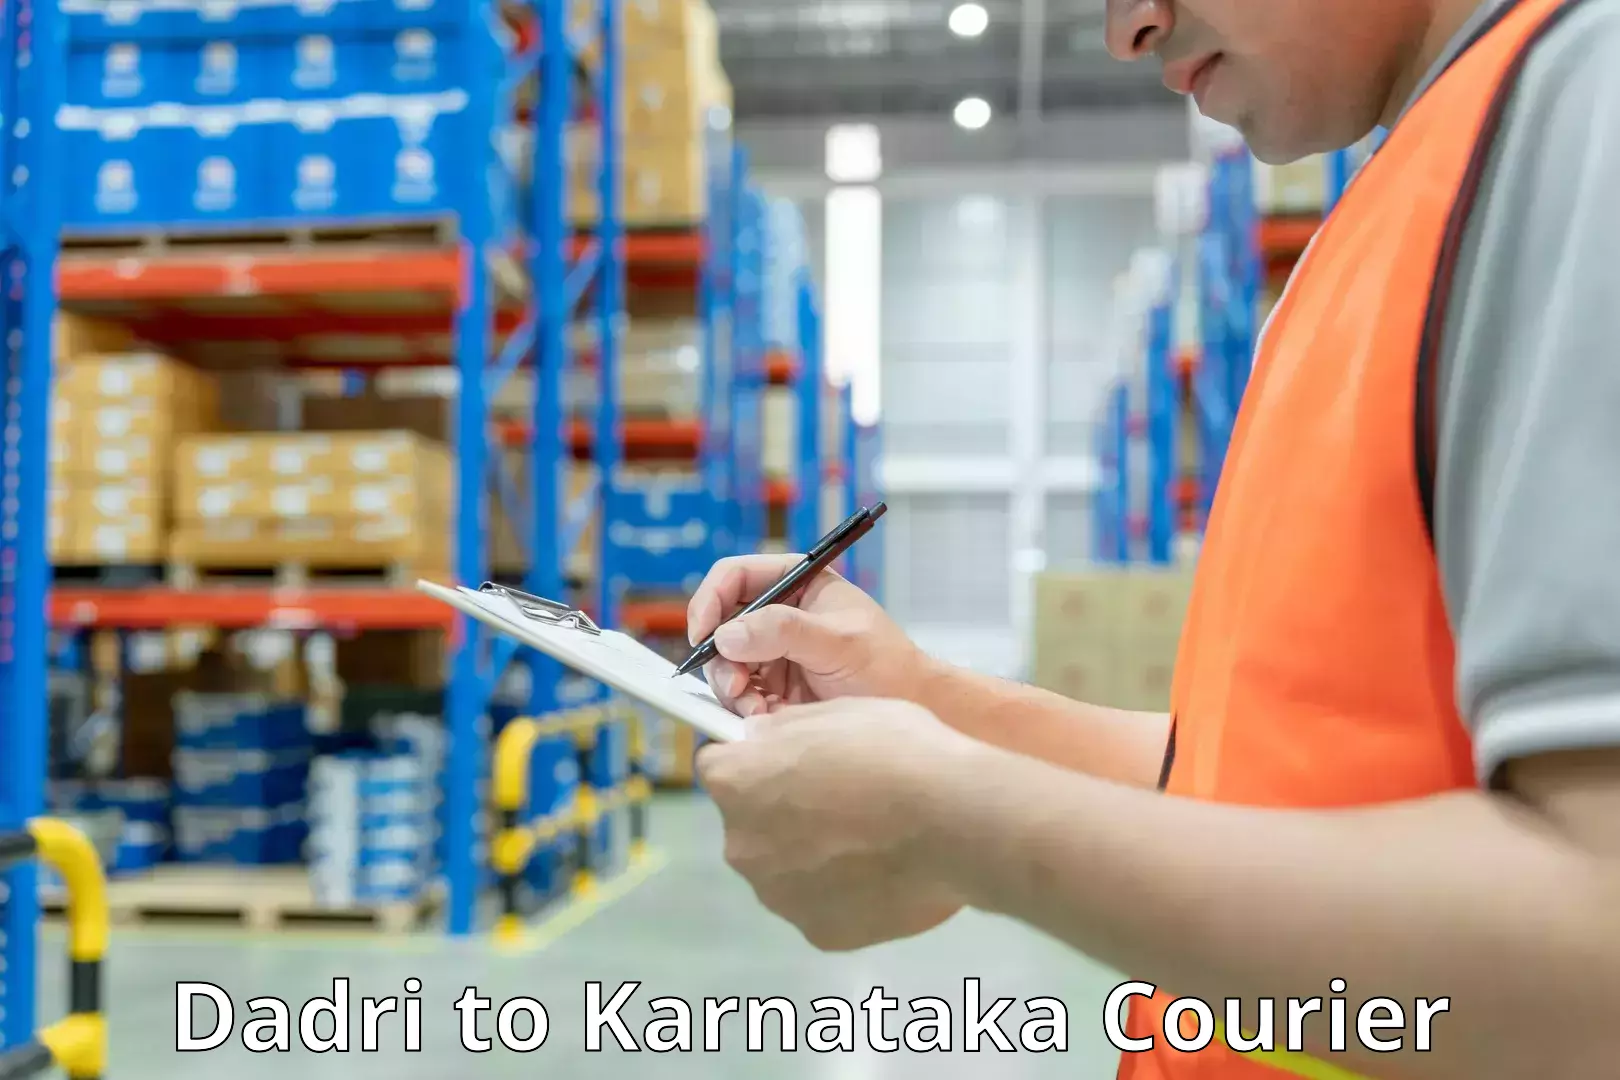 Digital baggage courier Dadri to Karnataka